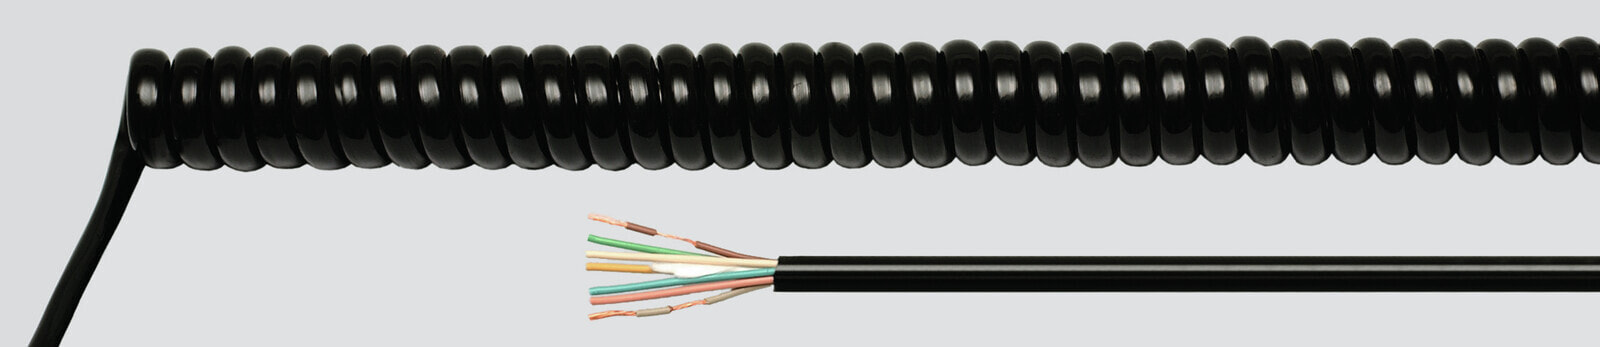 Helukabel 86338 - Low voltage cable - Black - Cooper - 0.75 mm² - 301.6 kg/km - -25 - 70 °C